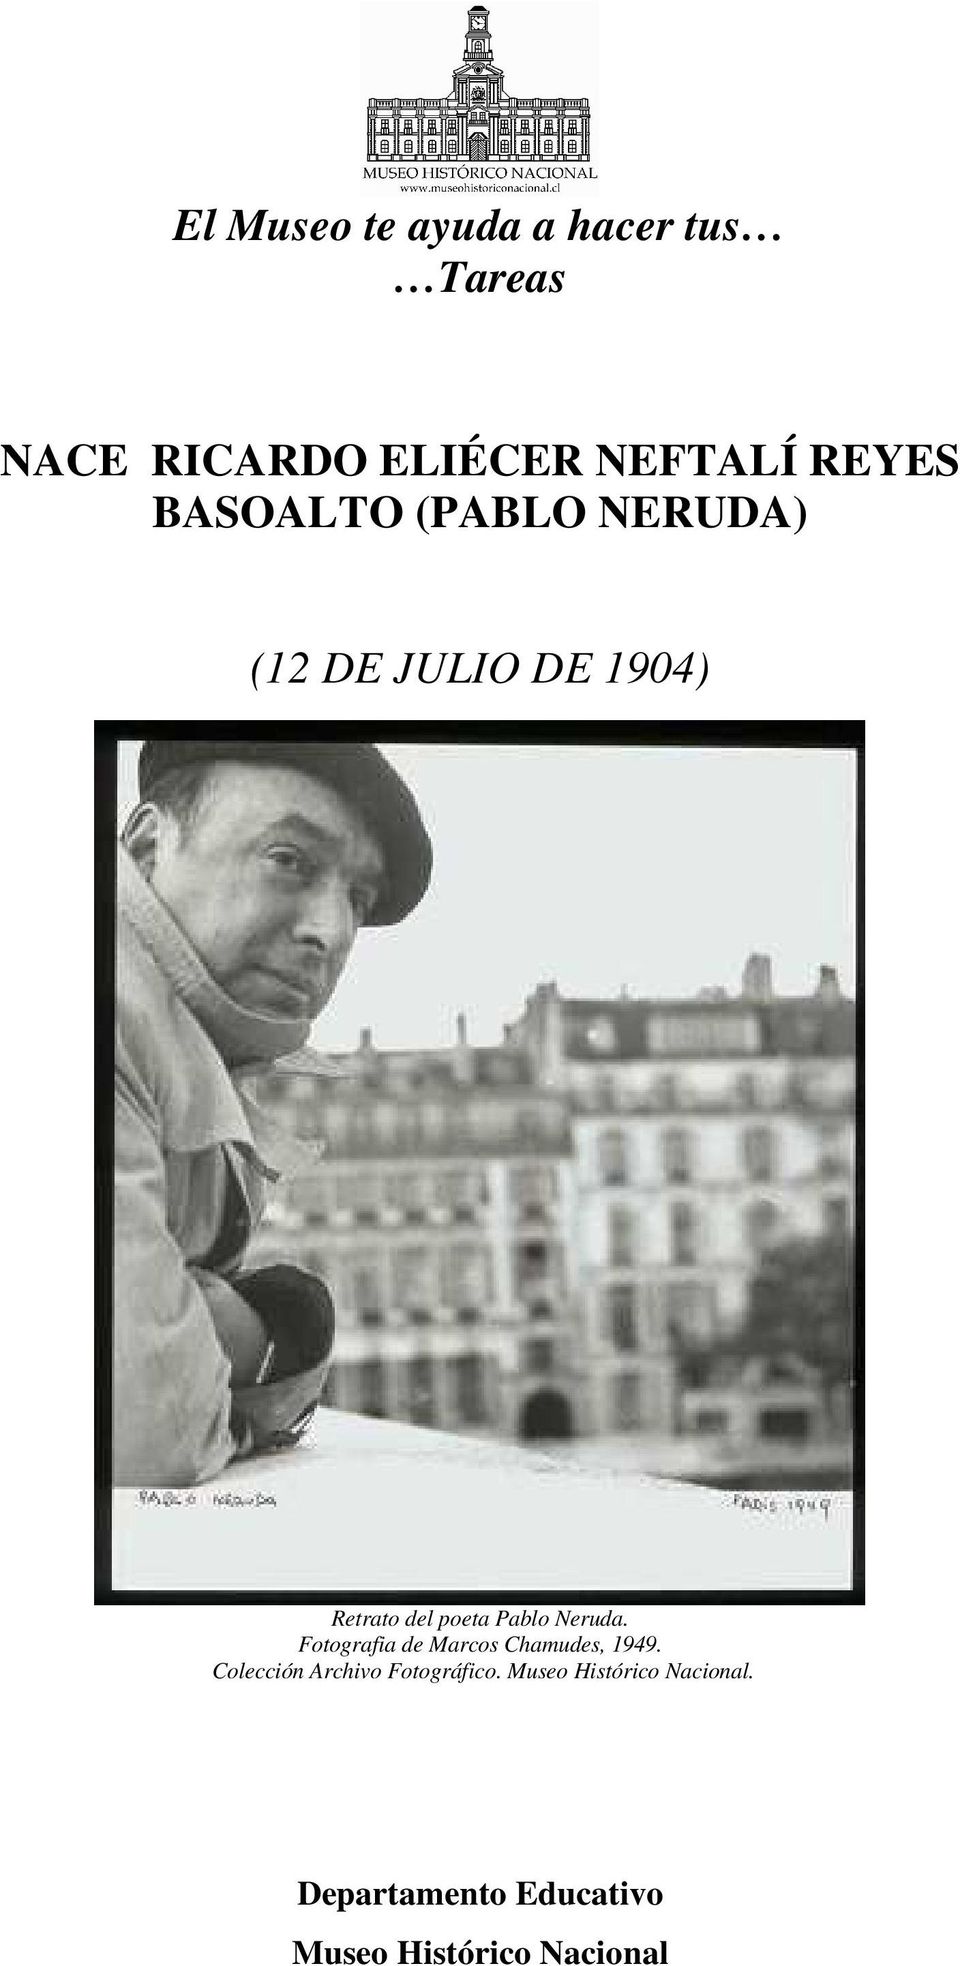 Retrato del poeta Pablo Neruda. Colección Archivo Fotográfico.